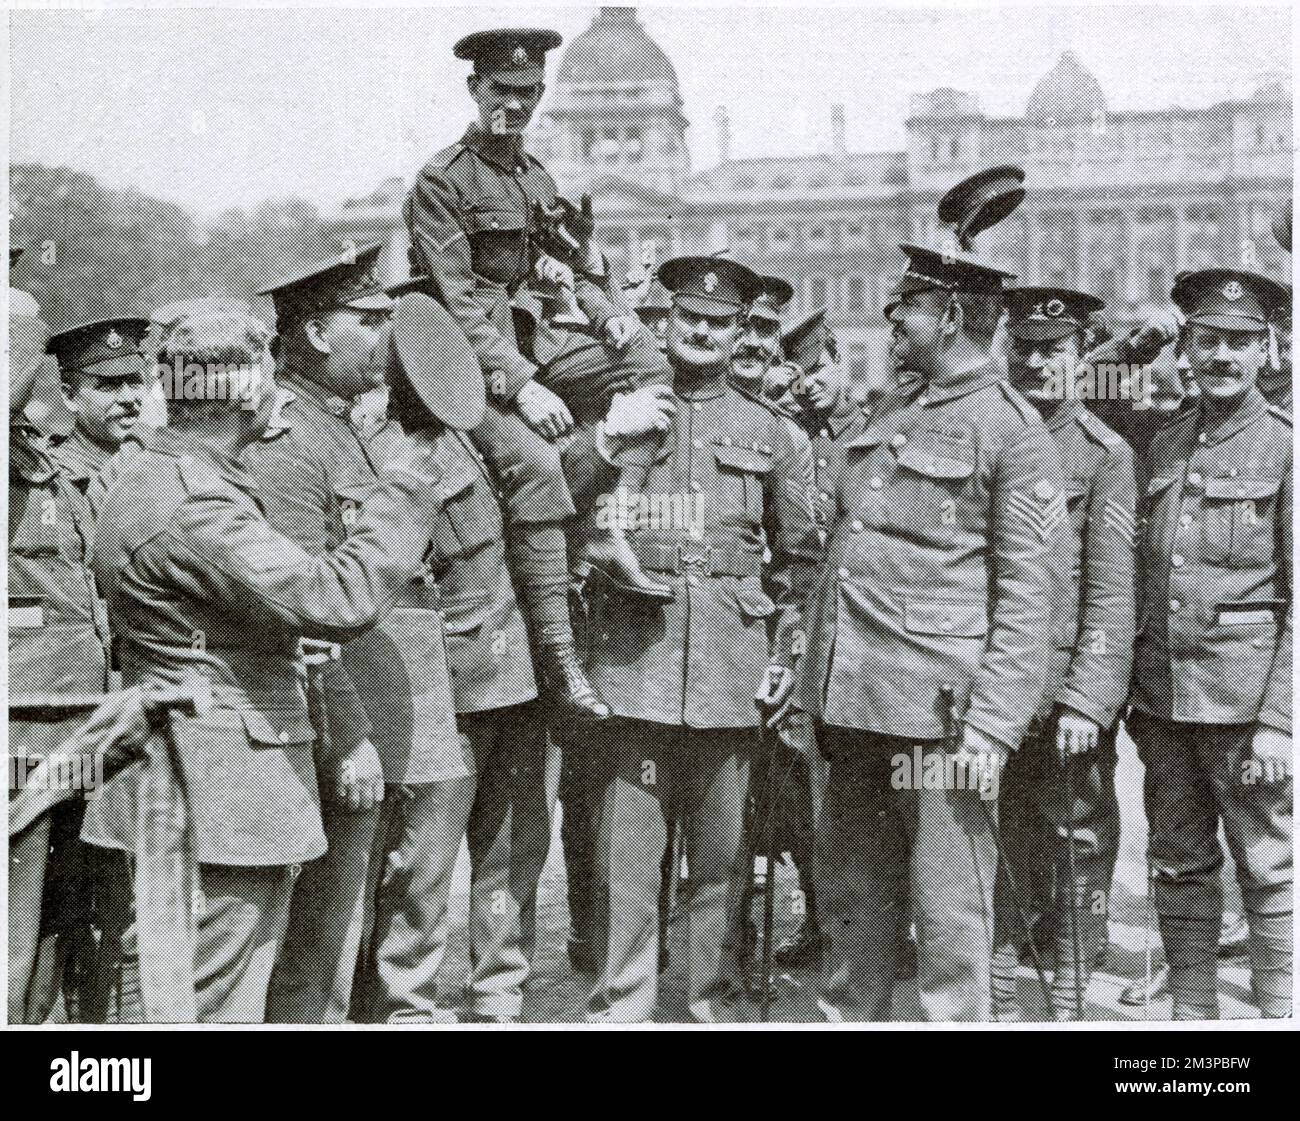 Lance-Corporal Edward Dwyer V.C. (1896-1916), Foto auf einer Rekrutierungsfahrt am Trafalgar Square im Dezember 1915. Dwyer, der als „kleiner Corporal“ bekannt ist, gewann sein Victoria Cross für Action auf Hill 60 am 20. April 1915, als er einen deutschen Angriff auf seinen Graben abwehrte, indem er auf der Attika stand und Handgranaten warf. Er wurde später am 3. September 1916 an der Somme getötet. Man sieht ihn hier auf den Schultern der Männer seines Regiments, der East Surreys. Stockfoto